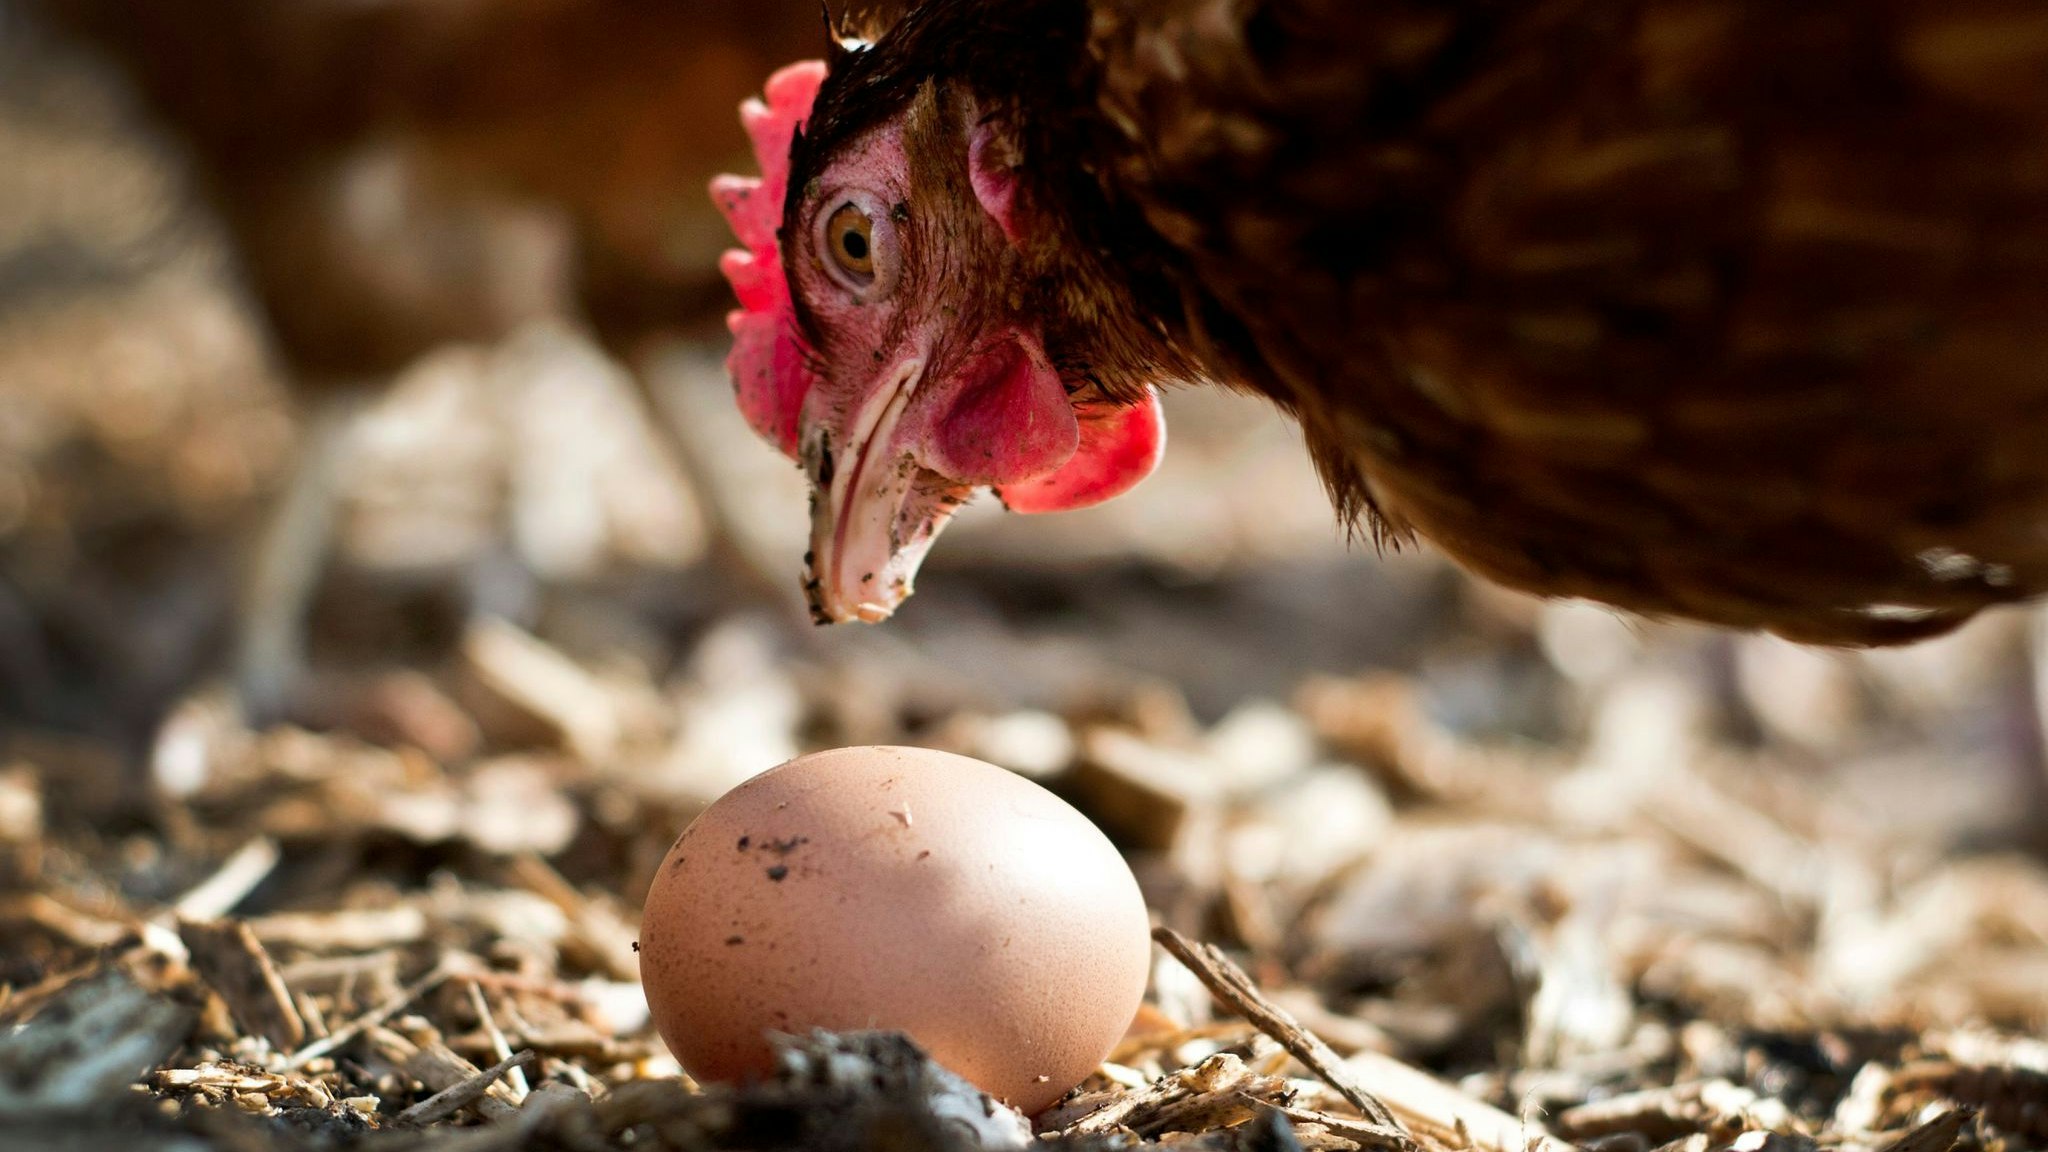 Öko-Eier wurden in den vergangenen Jahren bei Verbrauchern immer beliebter. Foto: dpa